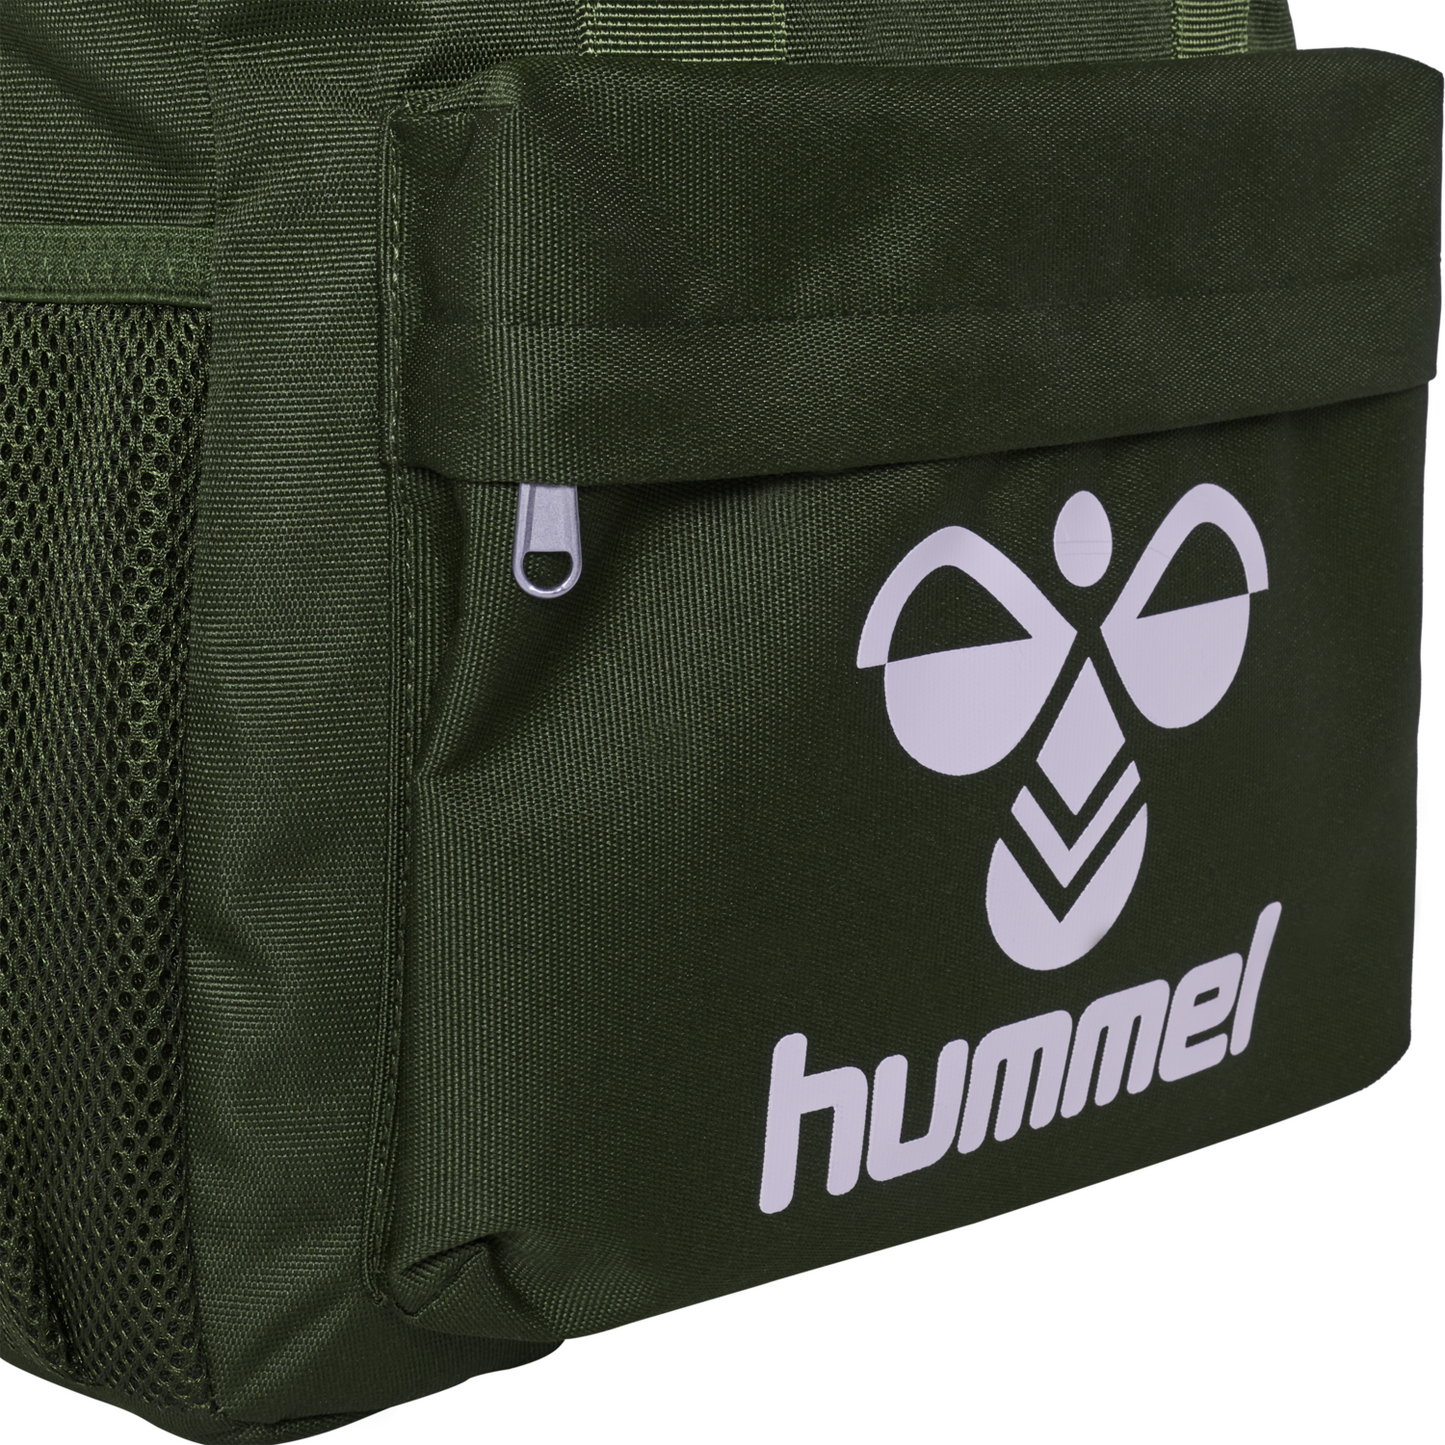 Hummel Cypress Back Pack with Padded shoulder Straps